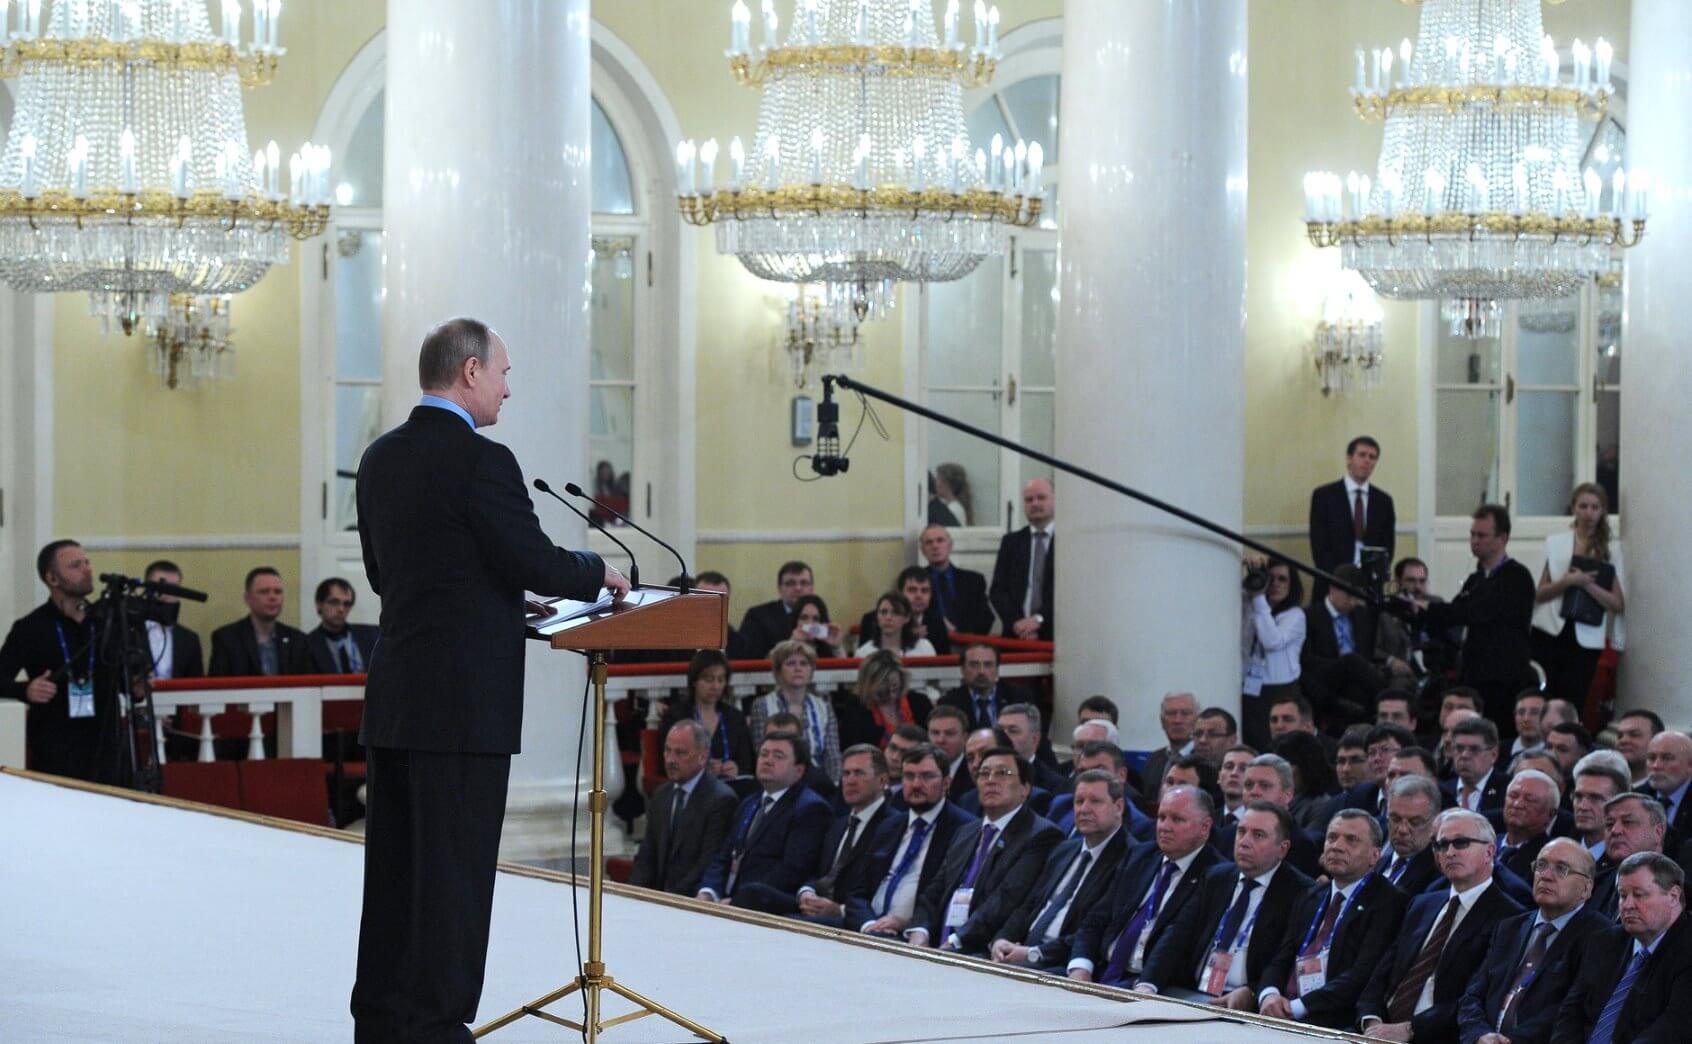  Владимир Путин: Нужно поддержать ребят, которые делают прорывные вещи 